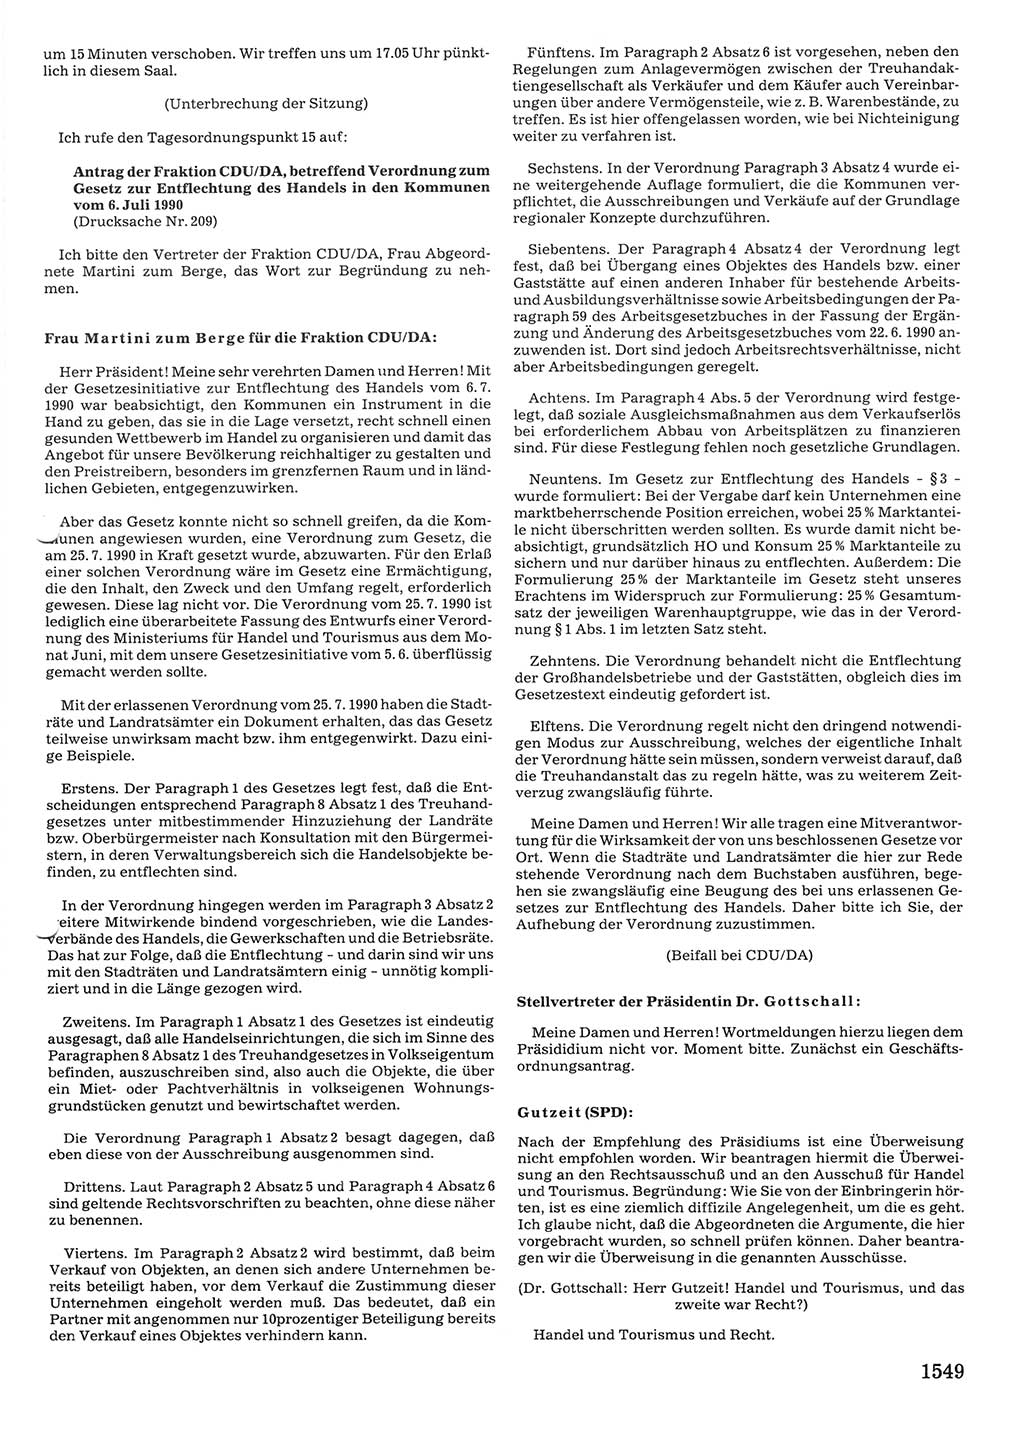 Tagungen der Volkskammer (VK) der Deutschen Demokratischen Republik (DDR), 10. Wahlperiode 1990, Seite 1549 (VK. DDR 10. WP. 1990, Prot. Tg. 1-38, 5.4.-2.10.1990, S. 1549)